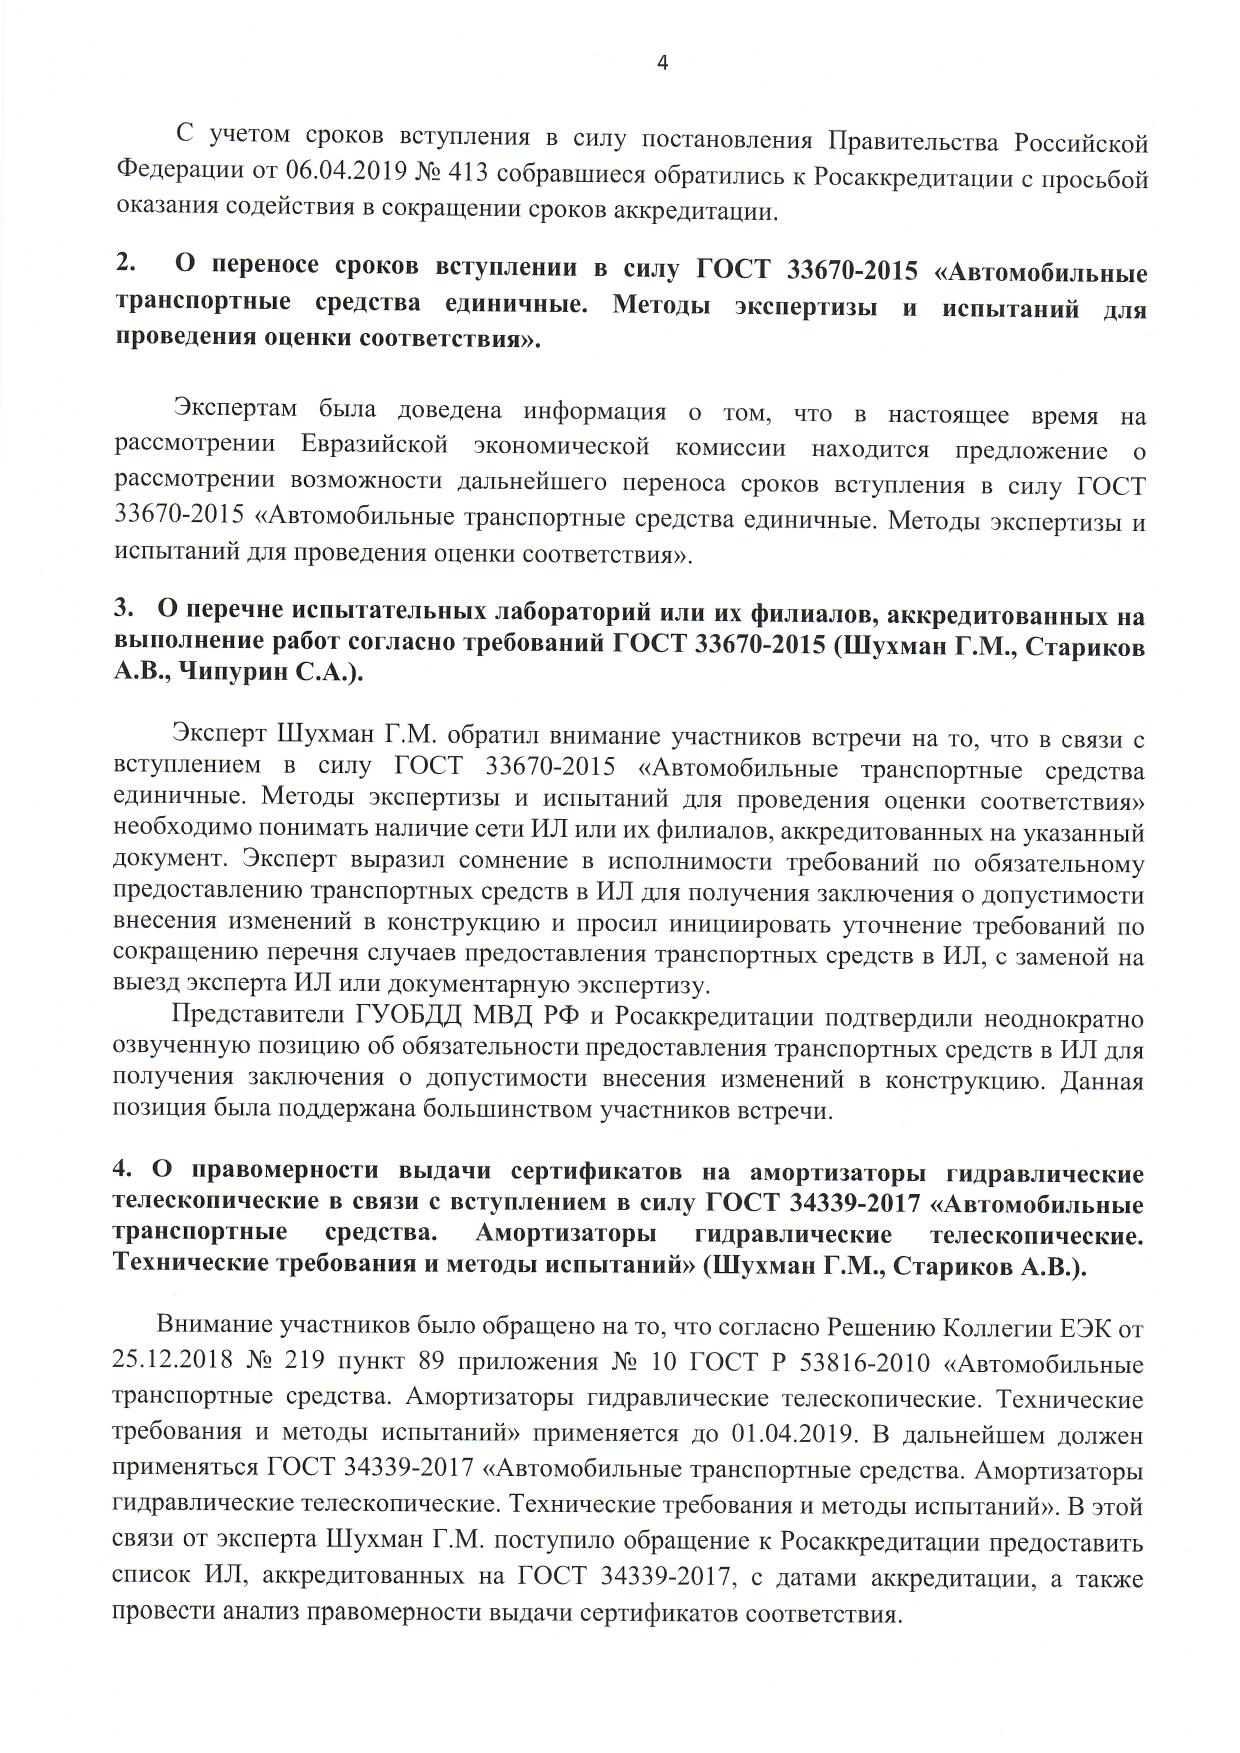 Рабочая группа при ФСА 27.05.2019 Постановление правительства 413